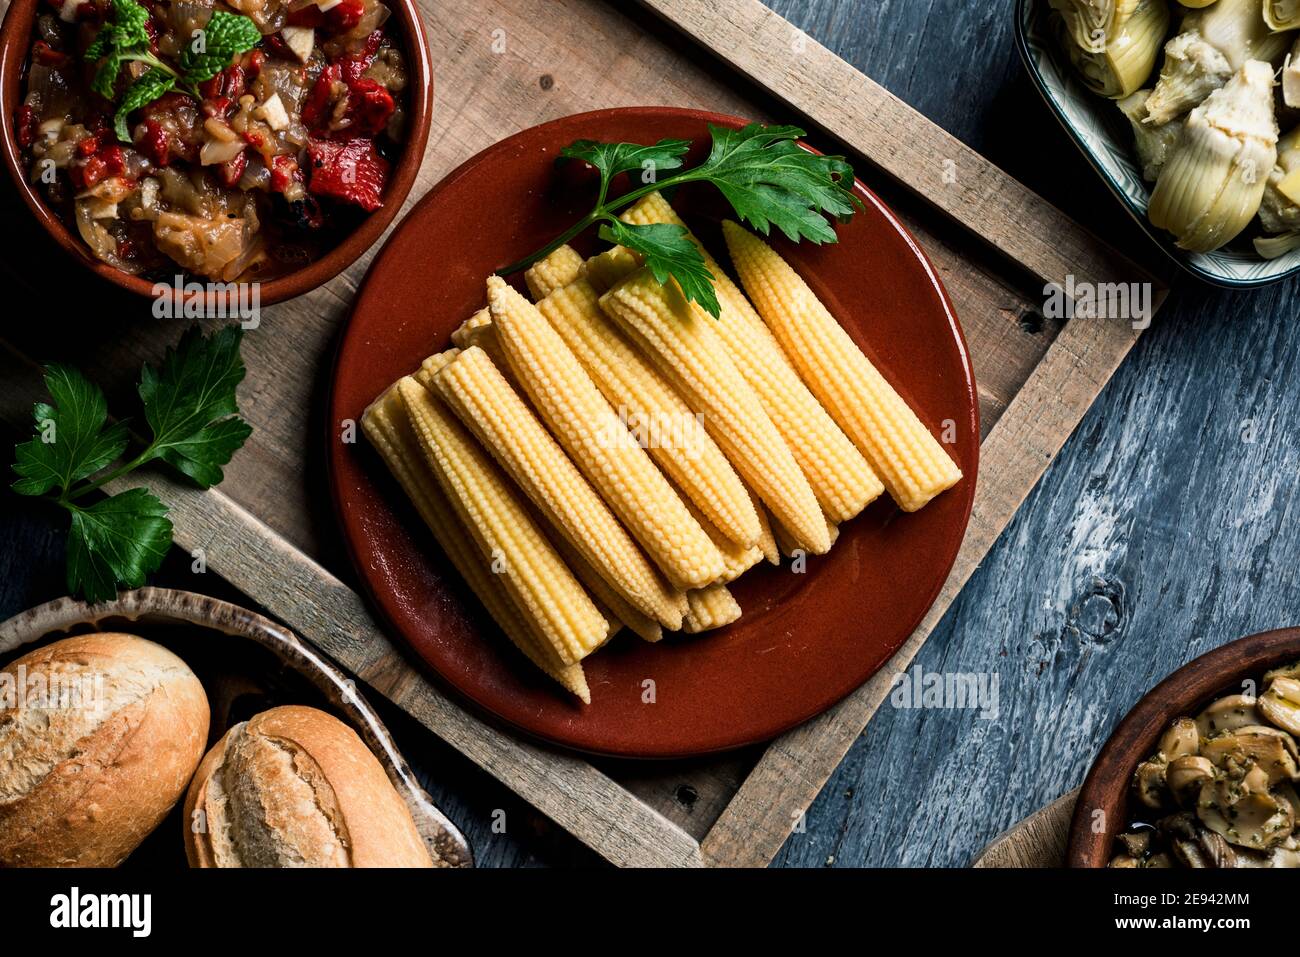 vue en grand angle de quelques cornes de bébé cuites dans une assiette sur une table à côté d'un bol avec quelques escalivada espagnol, fait avec différents légumes rôtis, s Banque D'Images